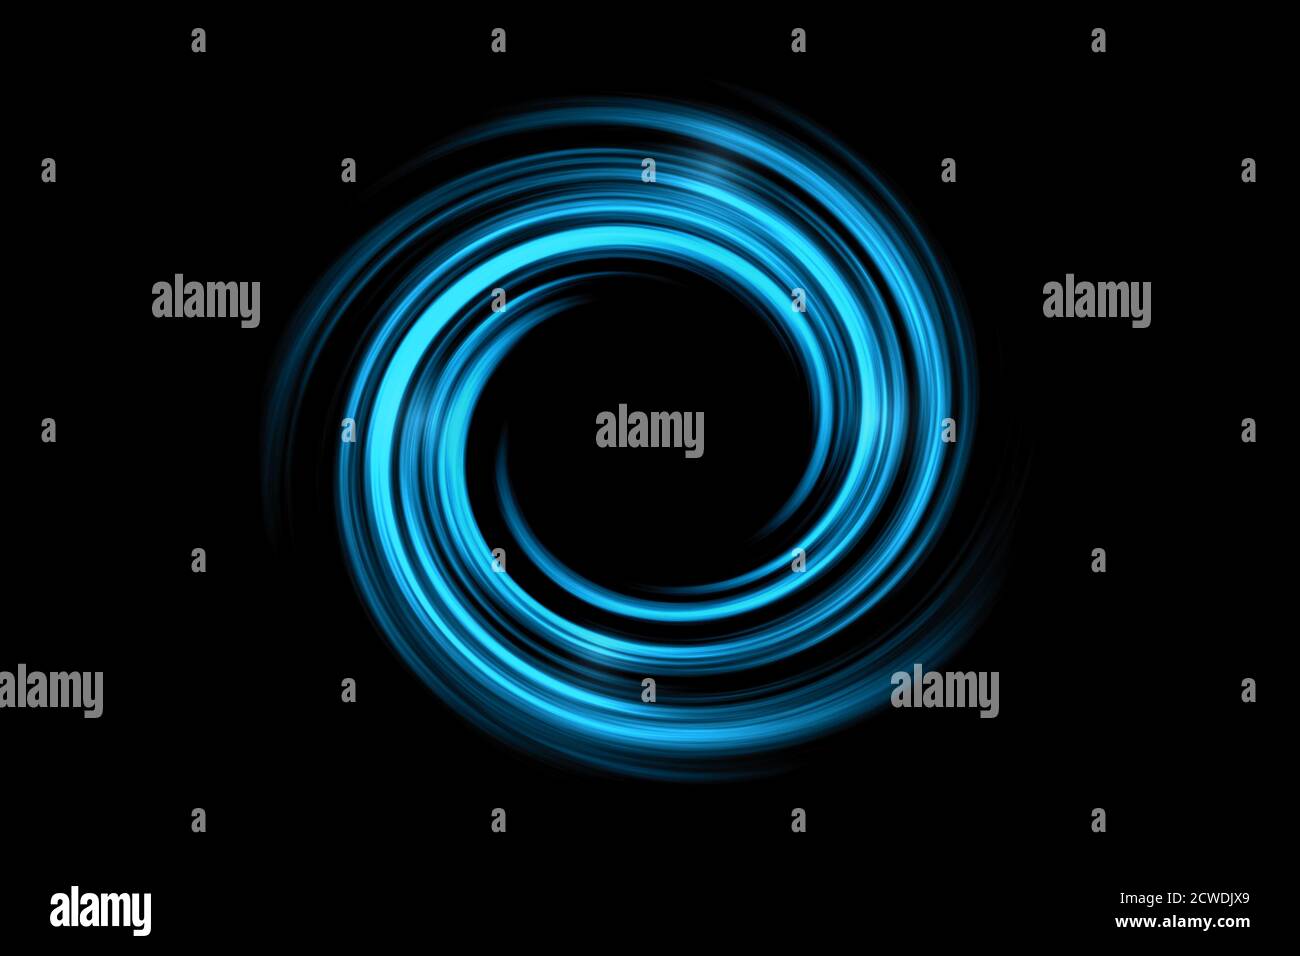 Trous noirs abstraits dans l'espace ou tunnel en spirale avec lumière brouillard bleu sur fond noir Banque D'Images